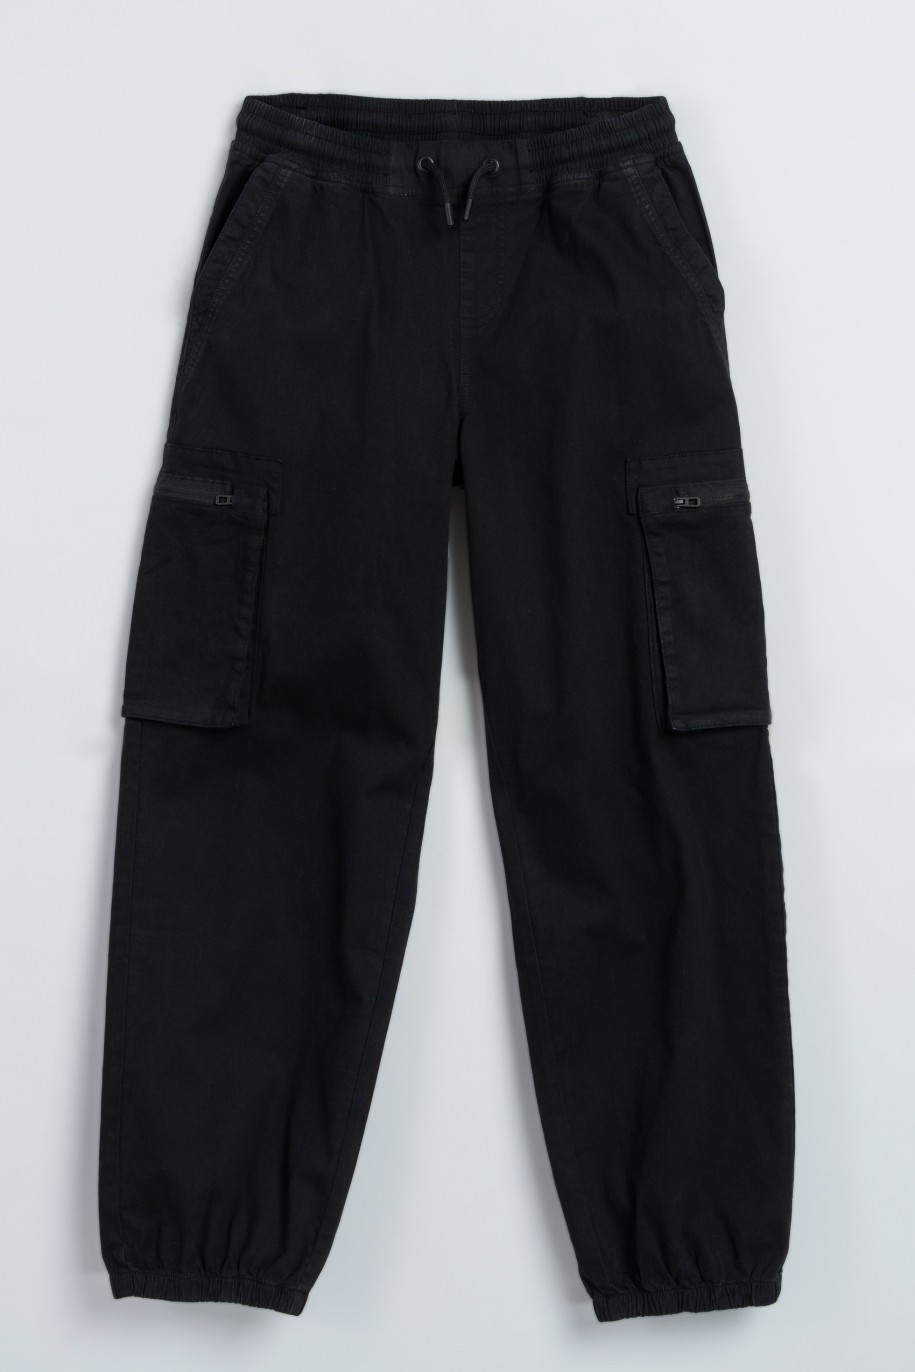 Czarne spodnie bawełniane z przestrzennymi kieszeniami - 47584